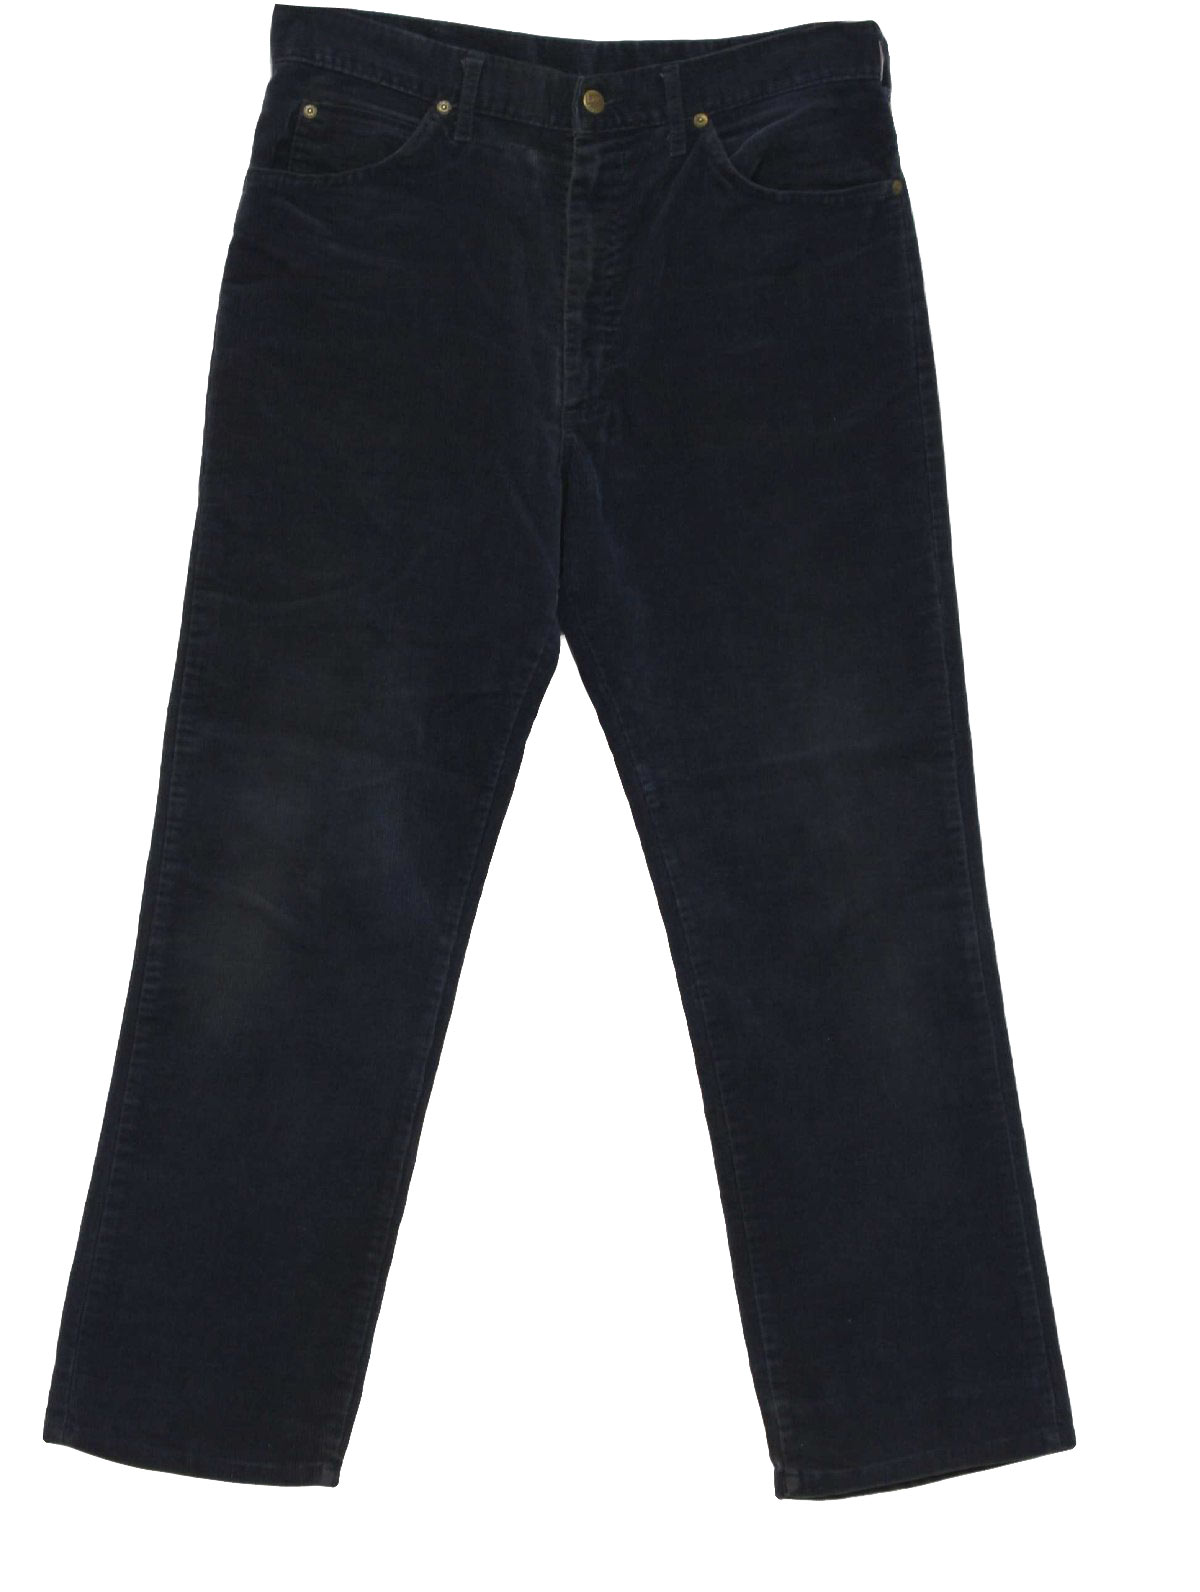 Retro 80s Pants (Lee) : 80s -Lee- Mens navy blue cotton corduroy ...